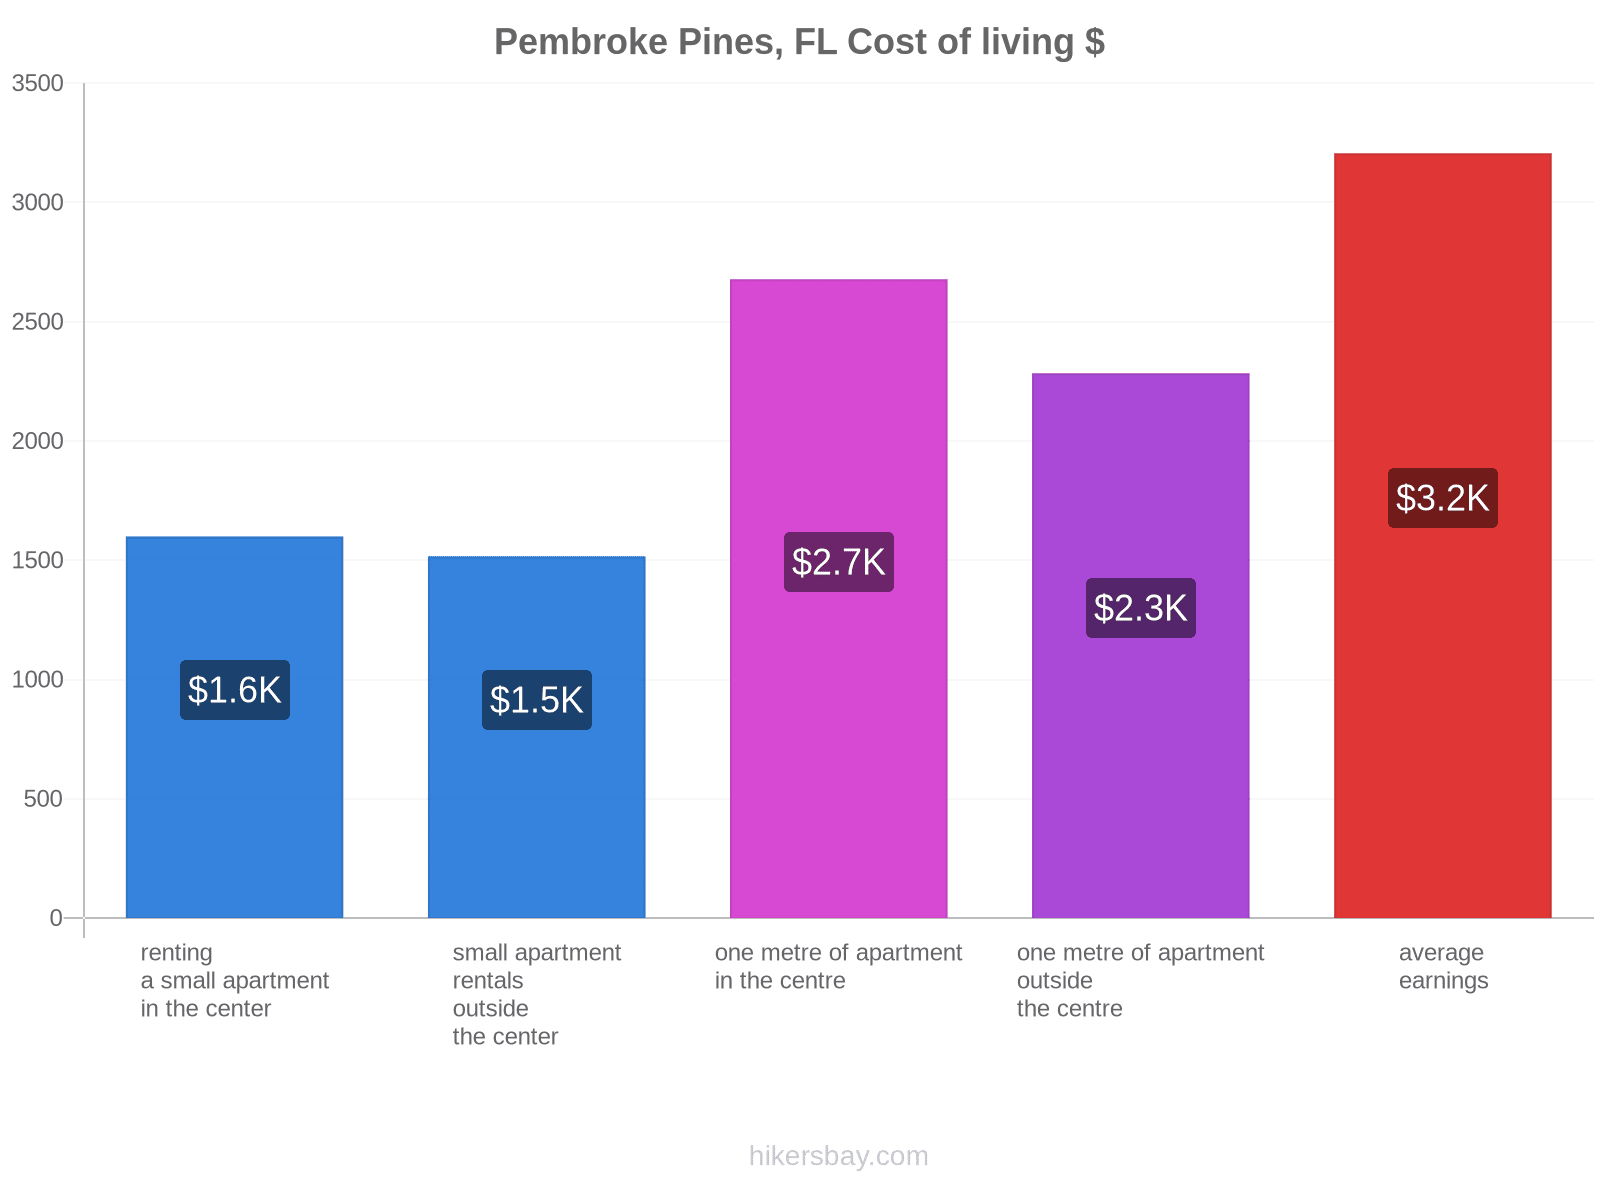 Pembroke Pines, FL cost of living hikersbay.com